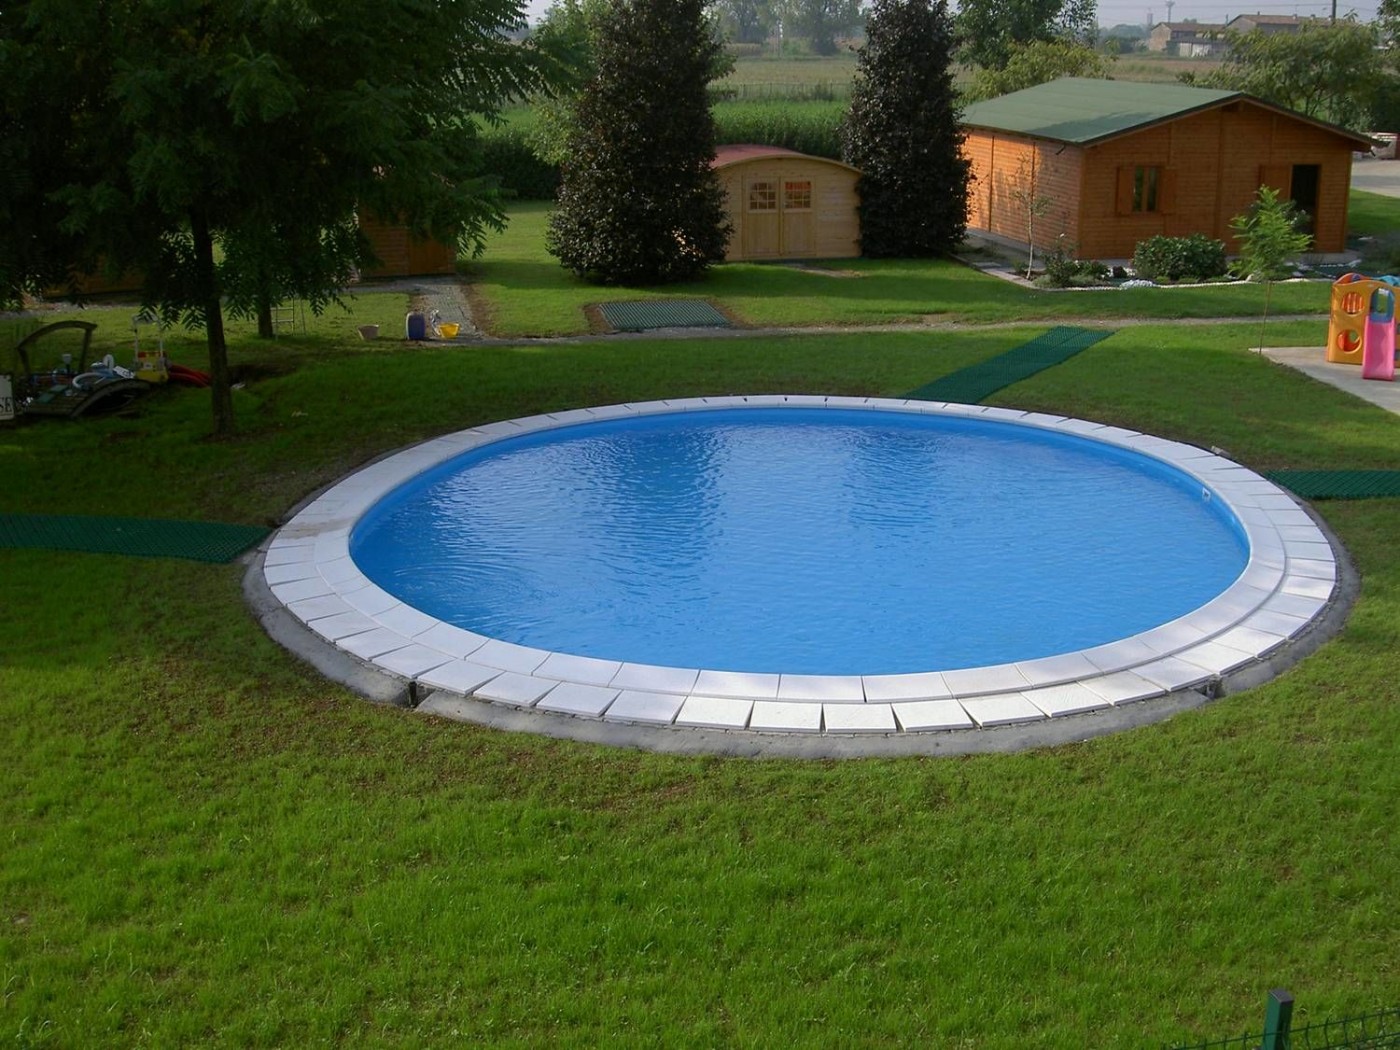 Pool round